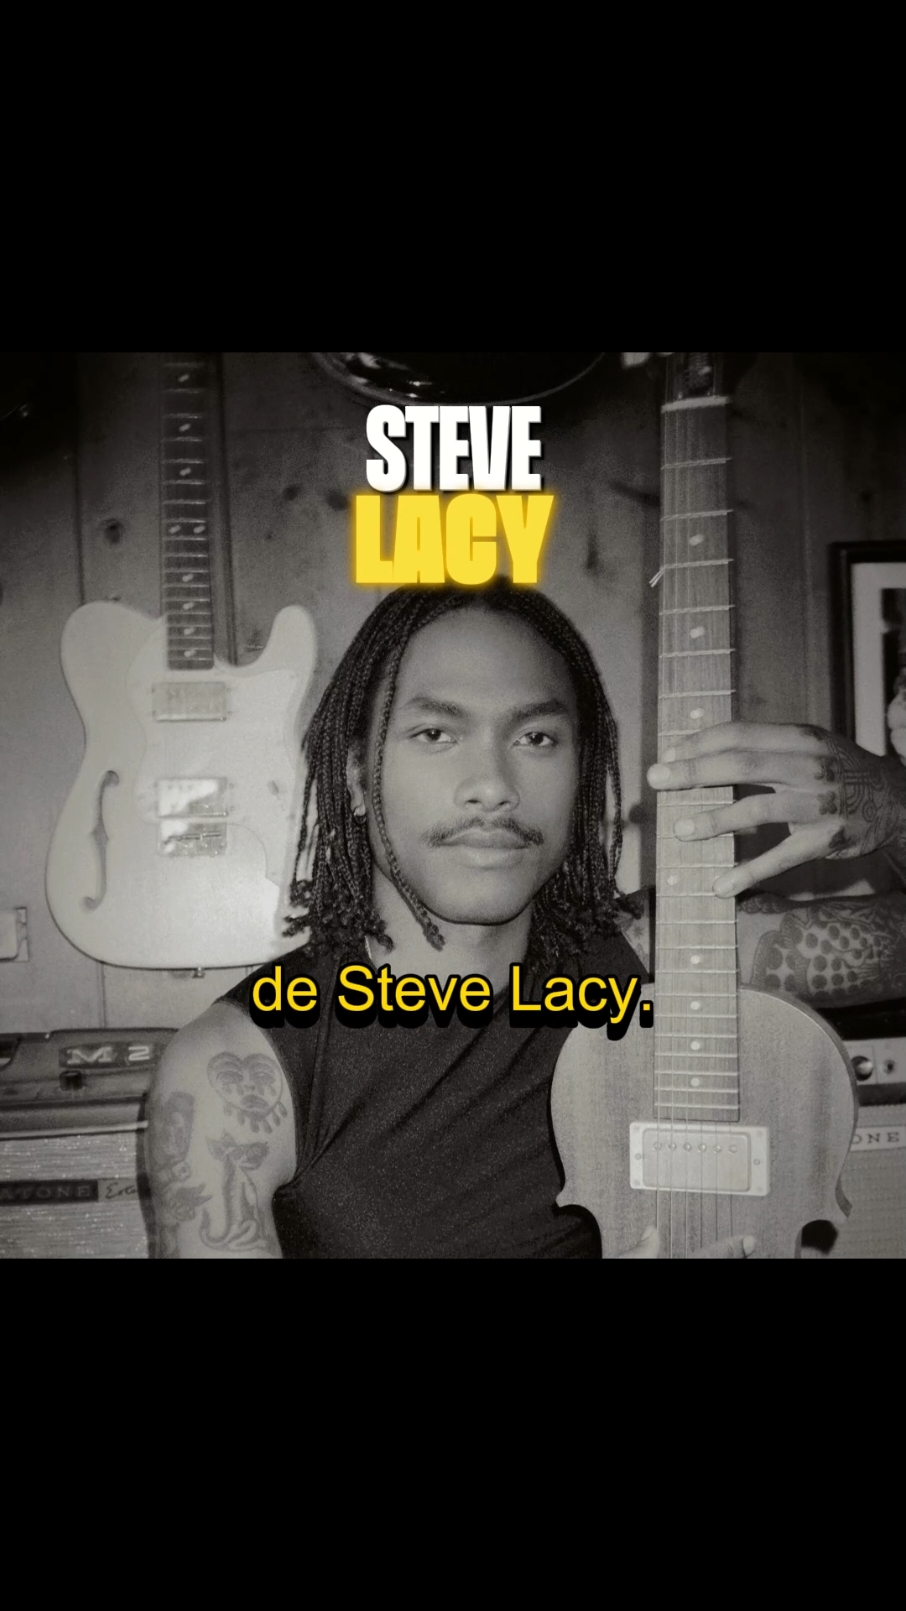 A incrível trajetória e ascensão de Steve Lacy!#musica #rnb #stevelacy #badhabit @steve lacy 